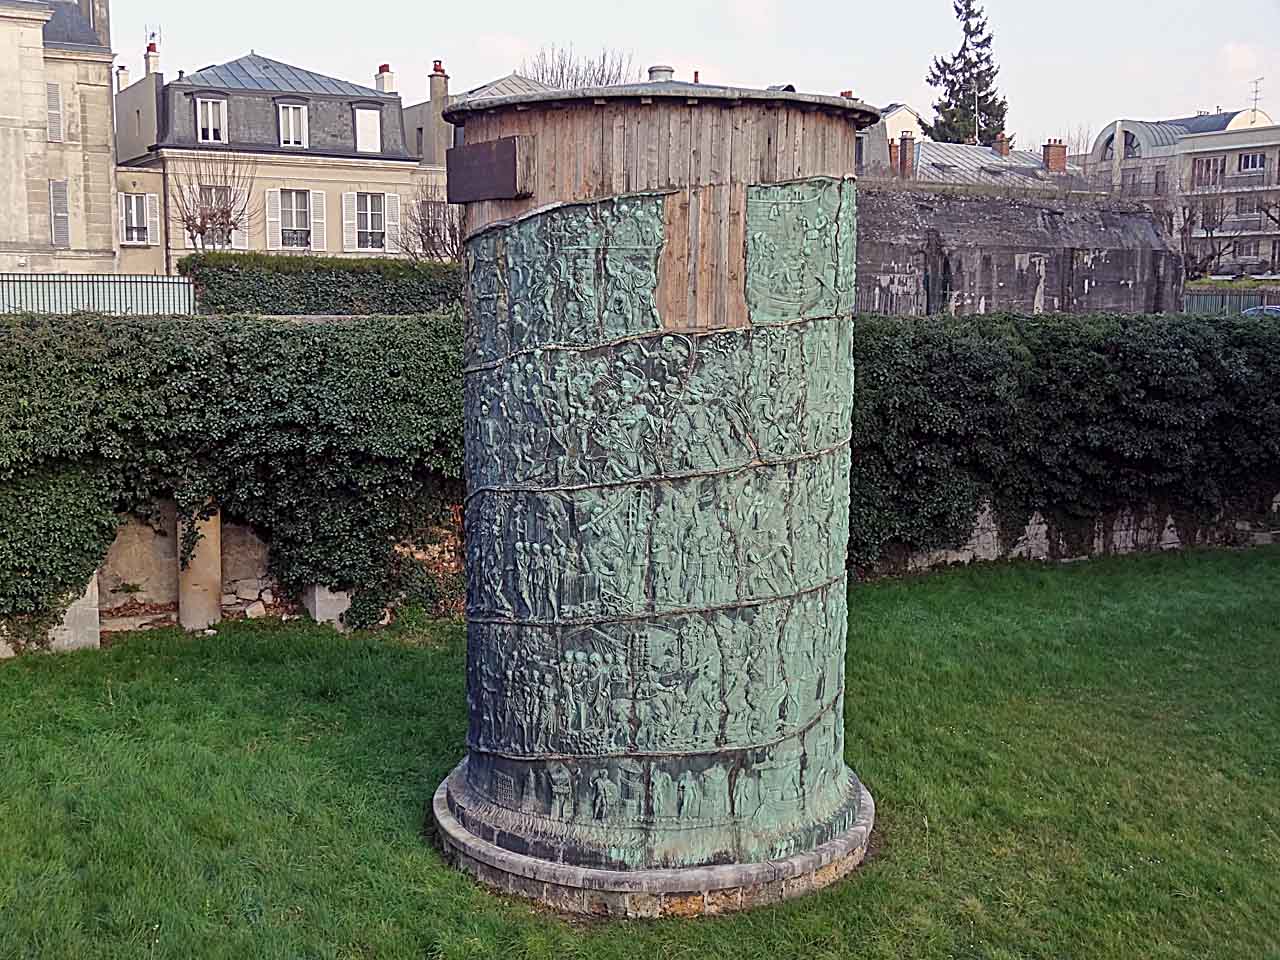 Moulage de la colonne trajane, fossés du château de Saint-Germain-en-Laye